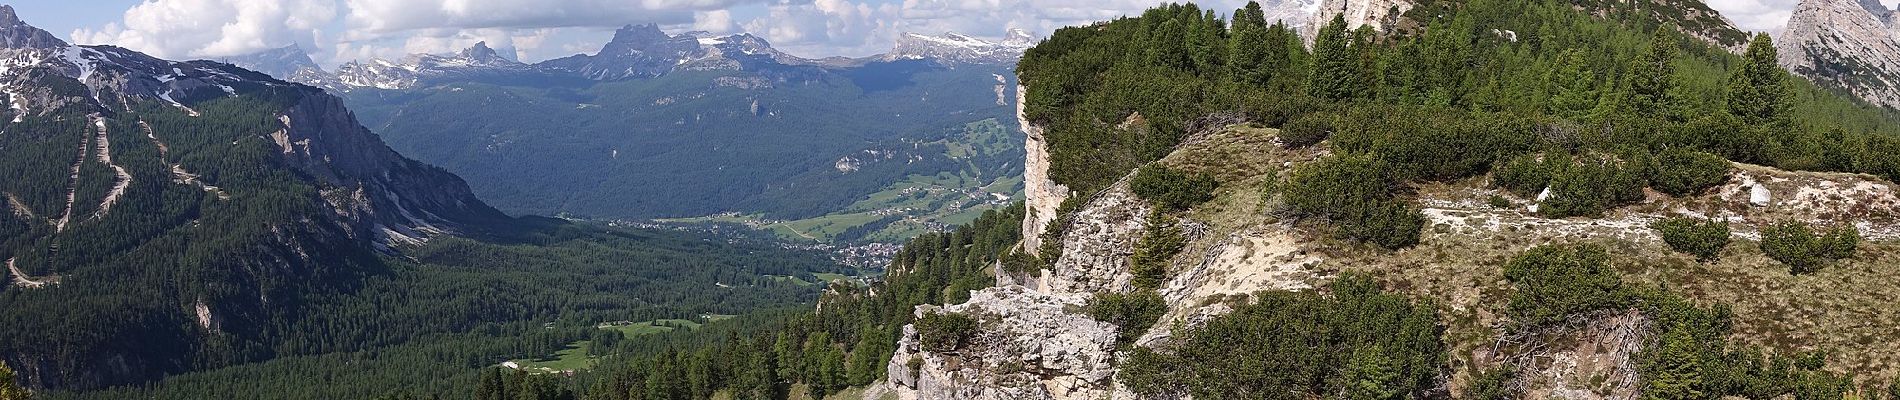 Percorso A piedi Cortina d'Ampezzo - Sentiero C.A.I. 206, Strada per Tre Croci - Lareto - Son Forca - Photo